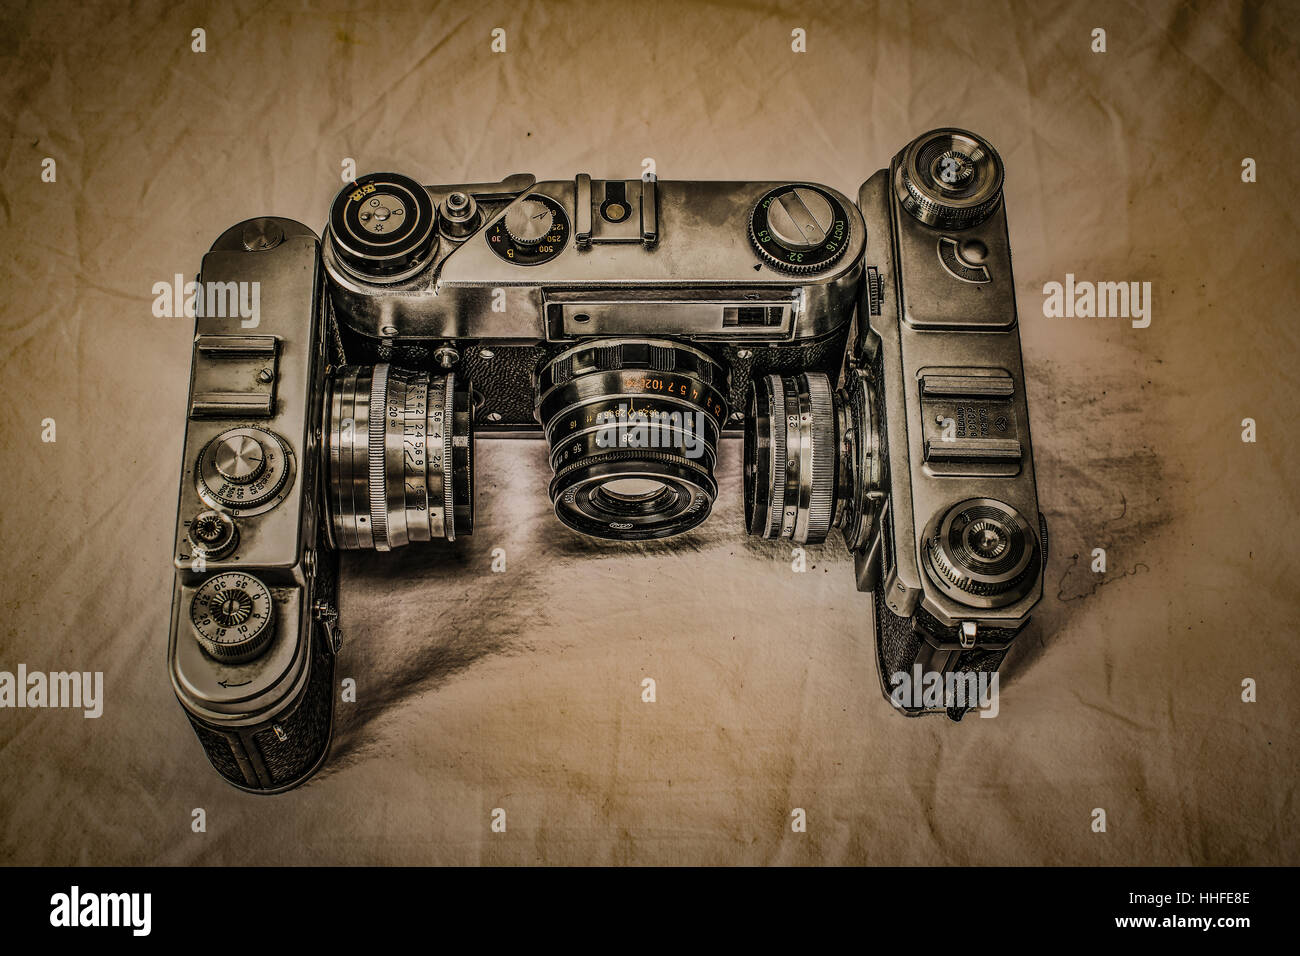 Vecchio classico russo una pellicola analogica fotocamere con controlli manuali su tela sporca con look vintage Foto Stock